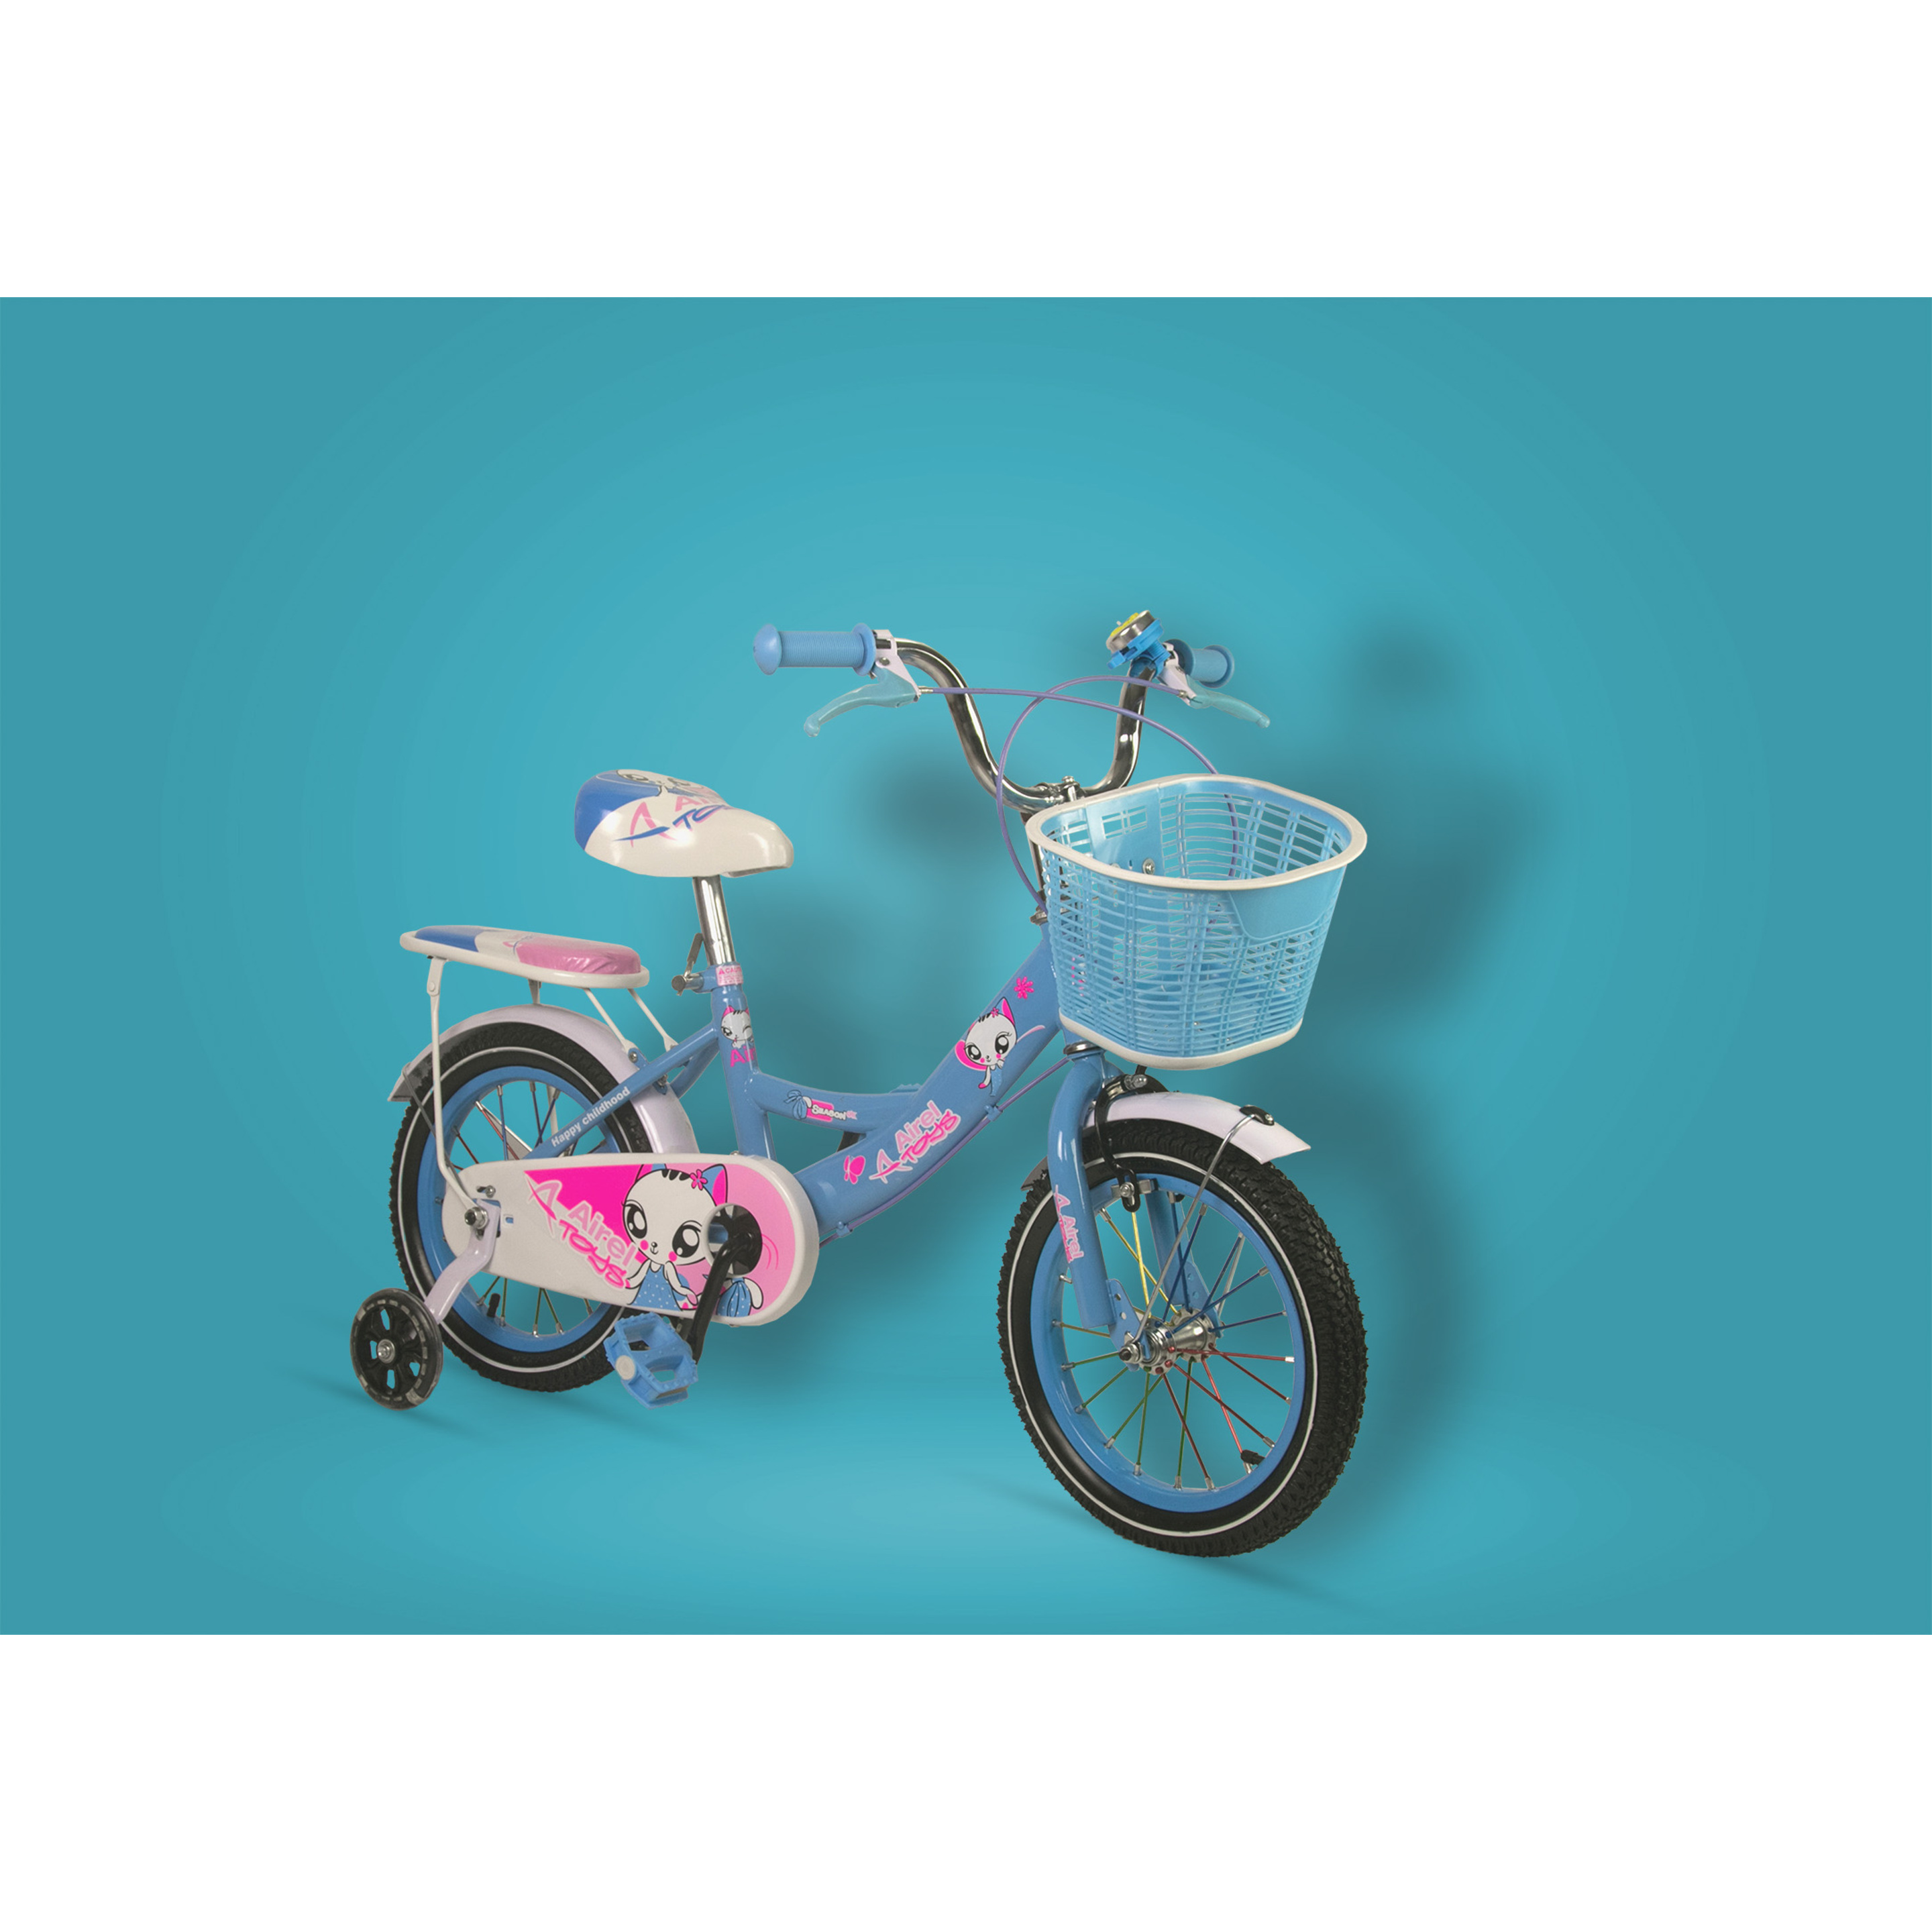 Bici Ruedines-cesta Niñas 3-7 Años Medidas: 80.5x19x40cm Color Azul